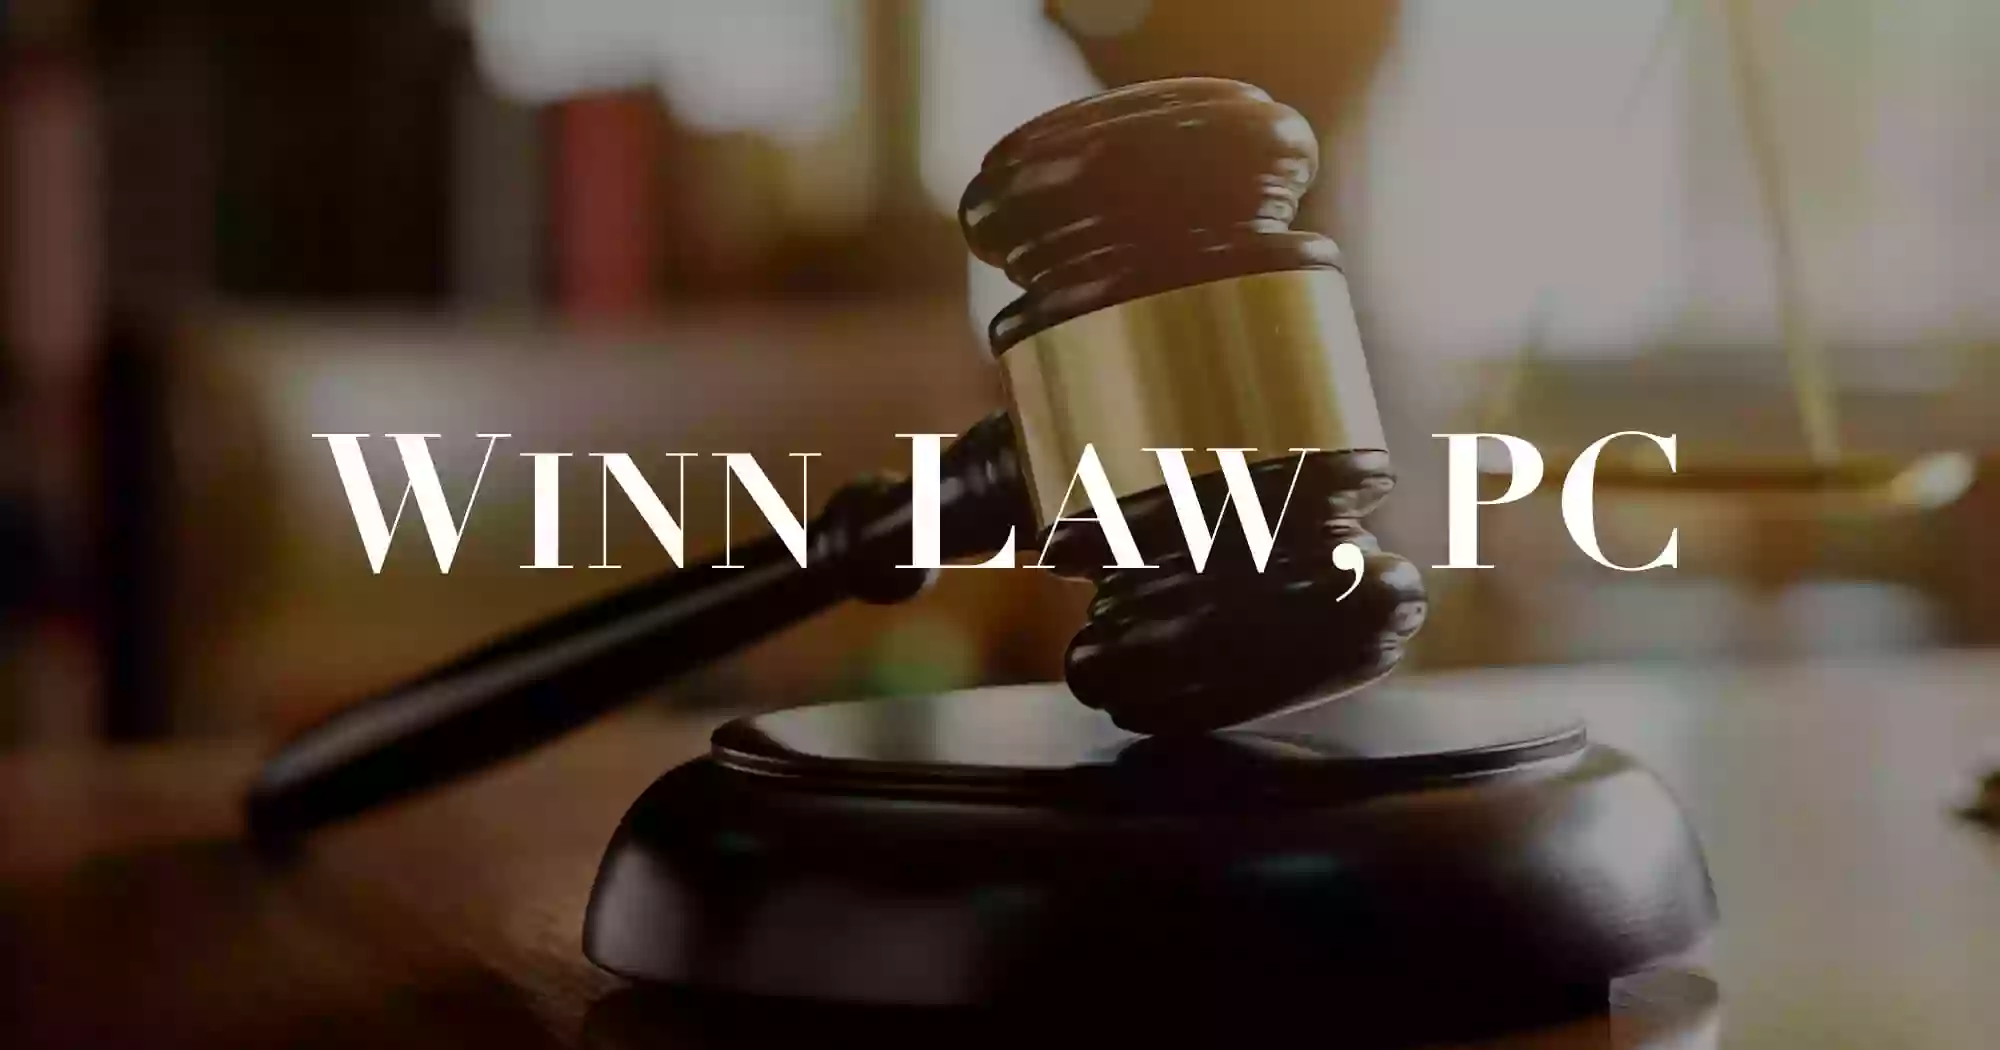 Attorney Patrick M. Winn